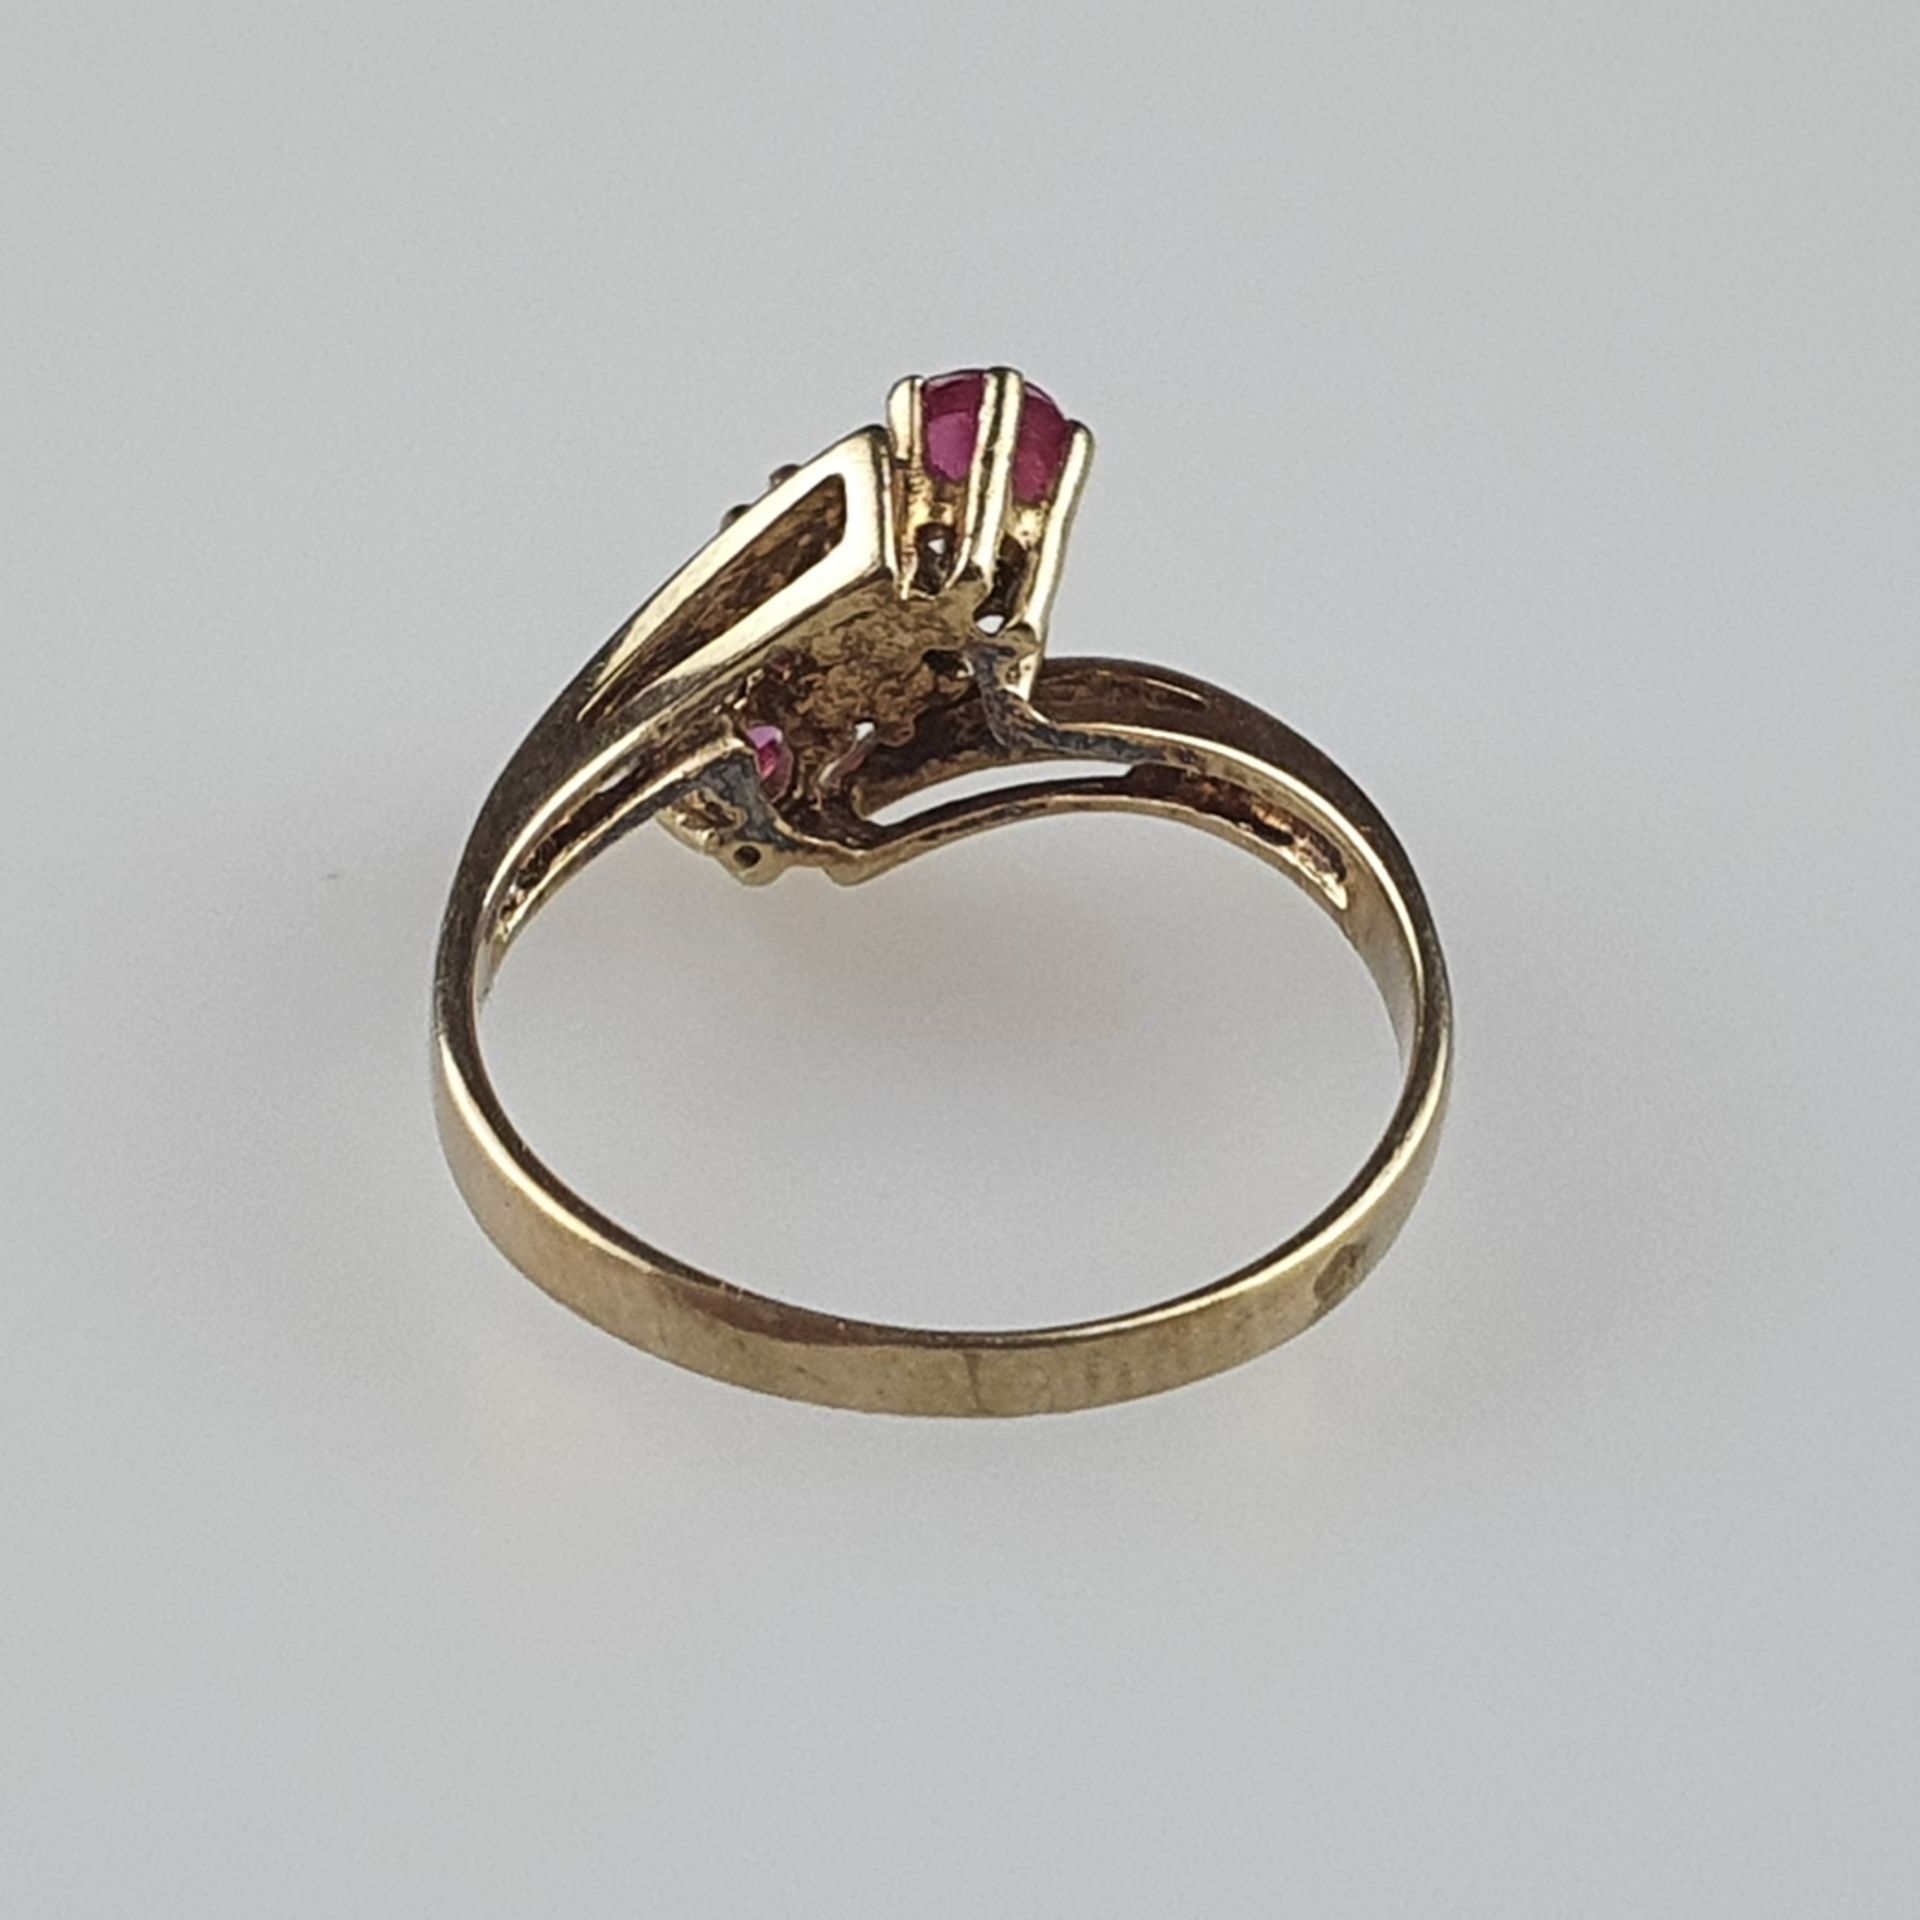 Rubinring mit kleinen Diamanten - Gelbgold 585/000, Ringkopf besetzt mit zwei facettierten Rubinen  - Bild 5 aus 6